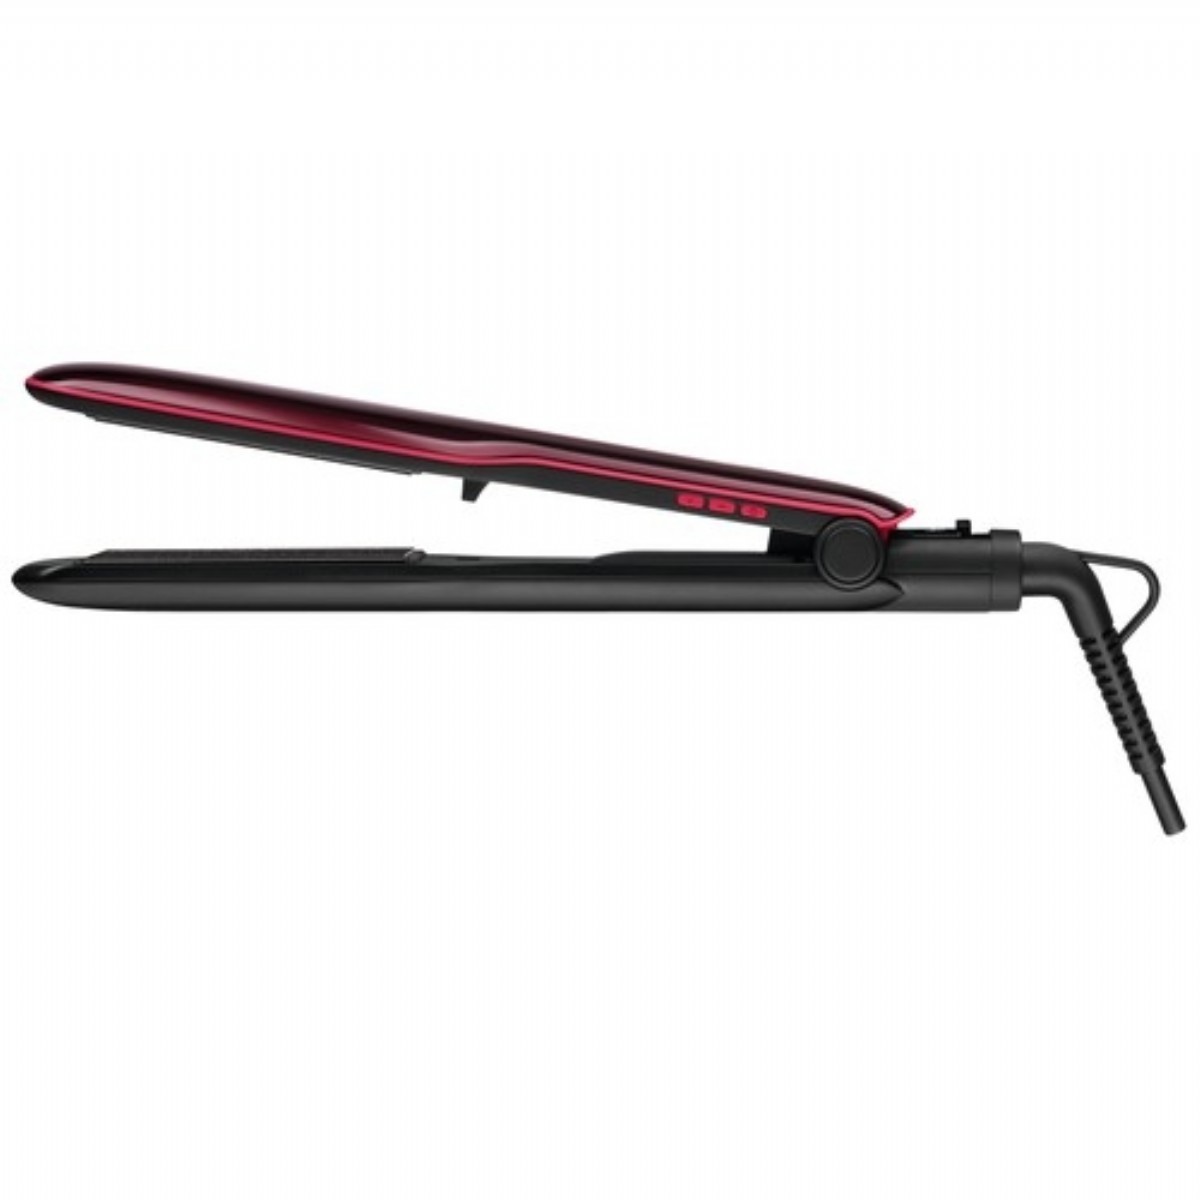  Saç Düzleştiricisi | Rowenta SF4112 Extra Liss Keratin Saç Düzleştirici | SF4112 | Rowenta SF4112 Extra Liss Keratin Saç Düzleştirici, rowenta saç düzleştirici, maşa, saç düzleştirici, SF4112 fiyat | 